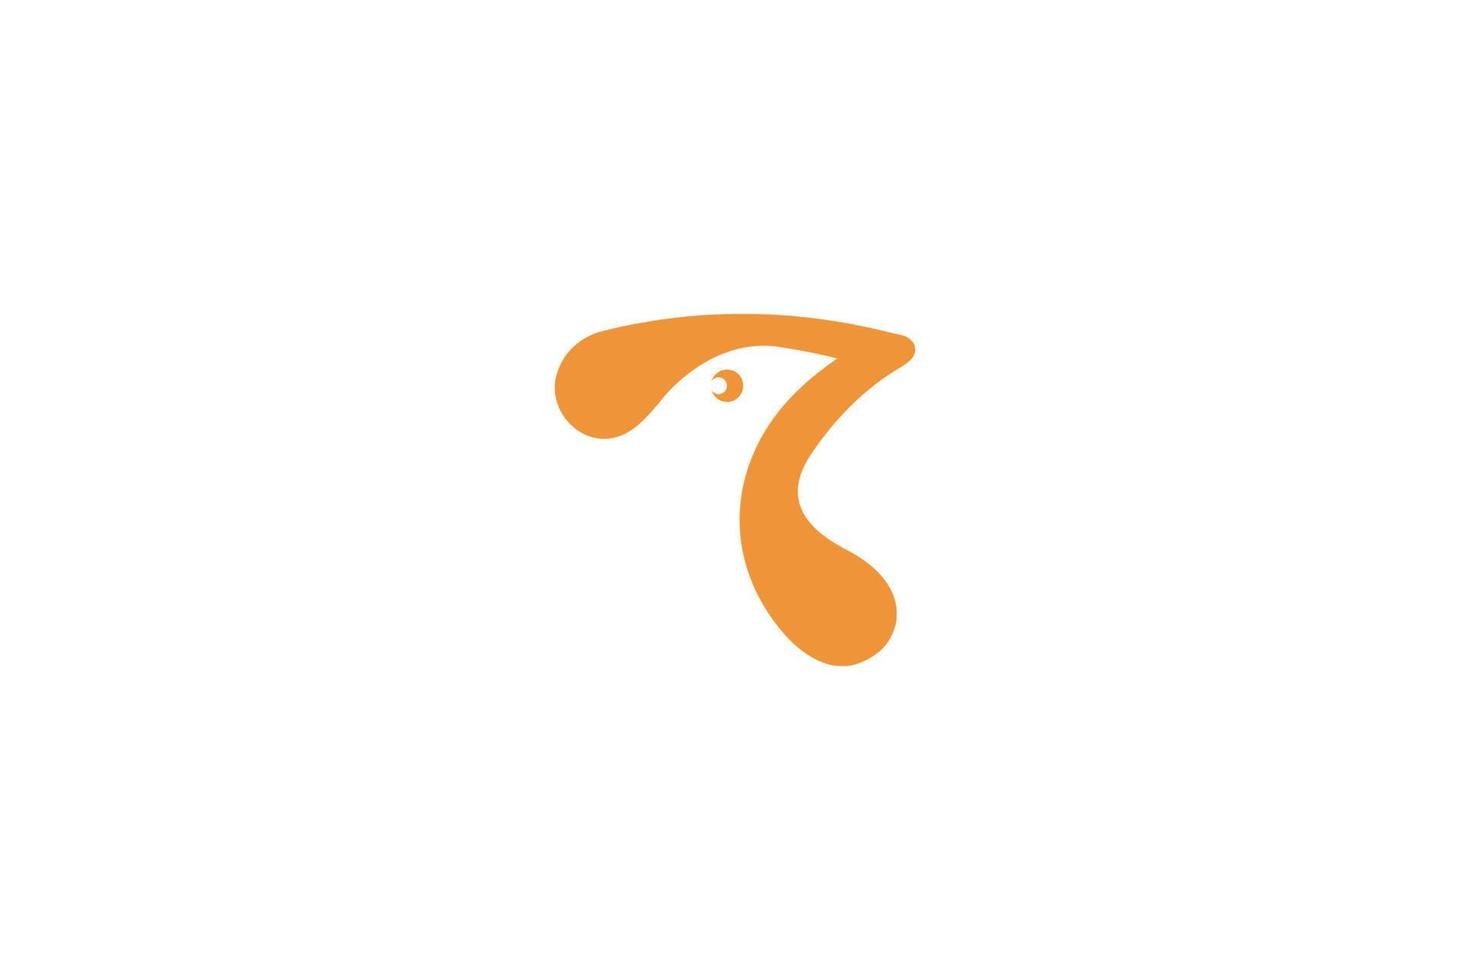 logo della musica degli uccelli, elemento di nota astratta, stile semplice ed elegante con grafica vettoriale di concept design unico